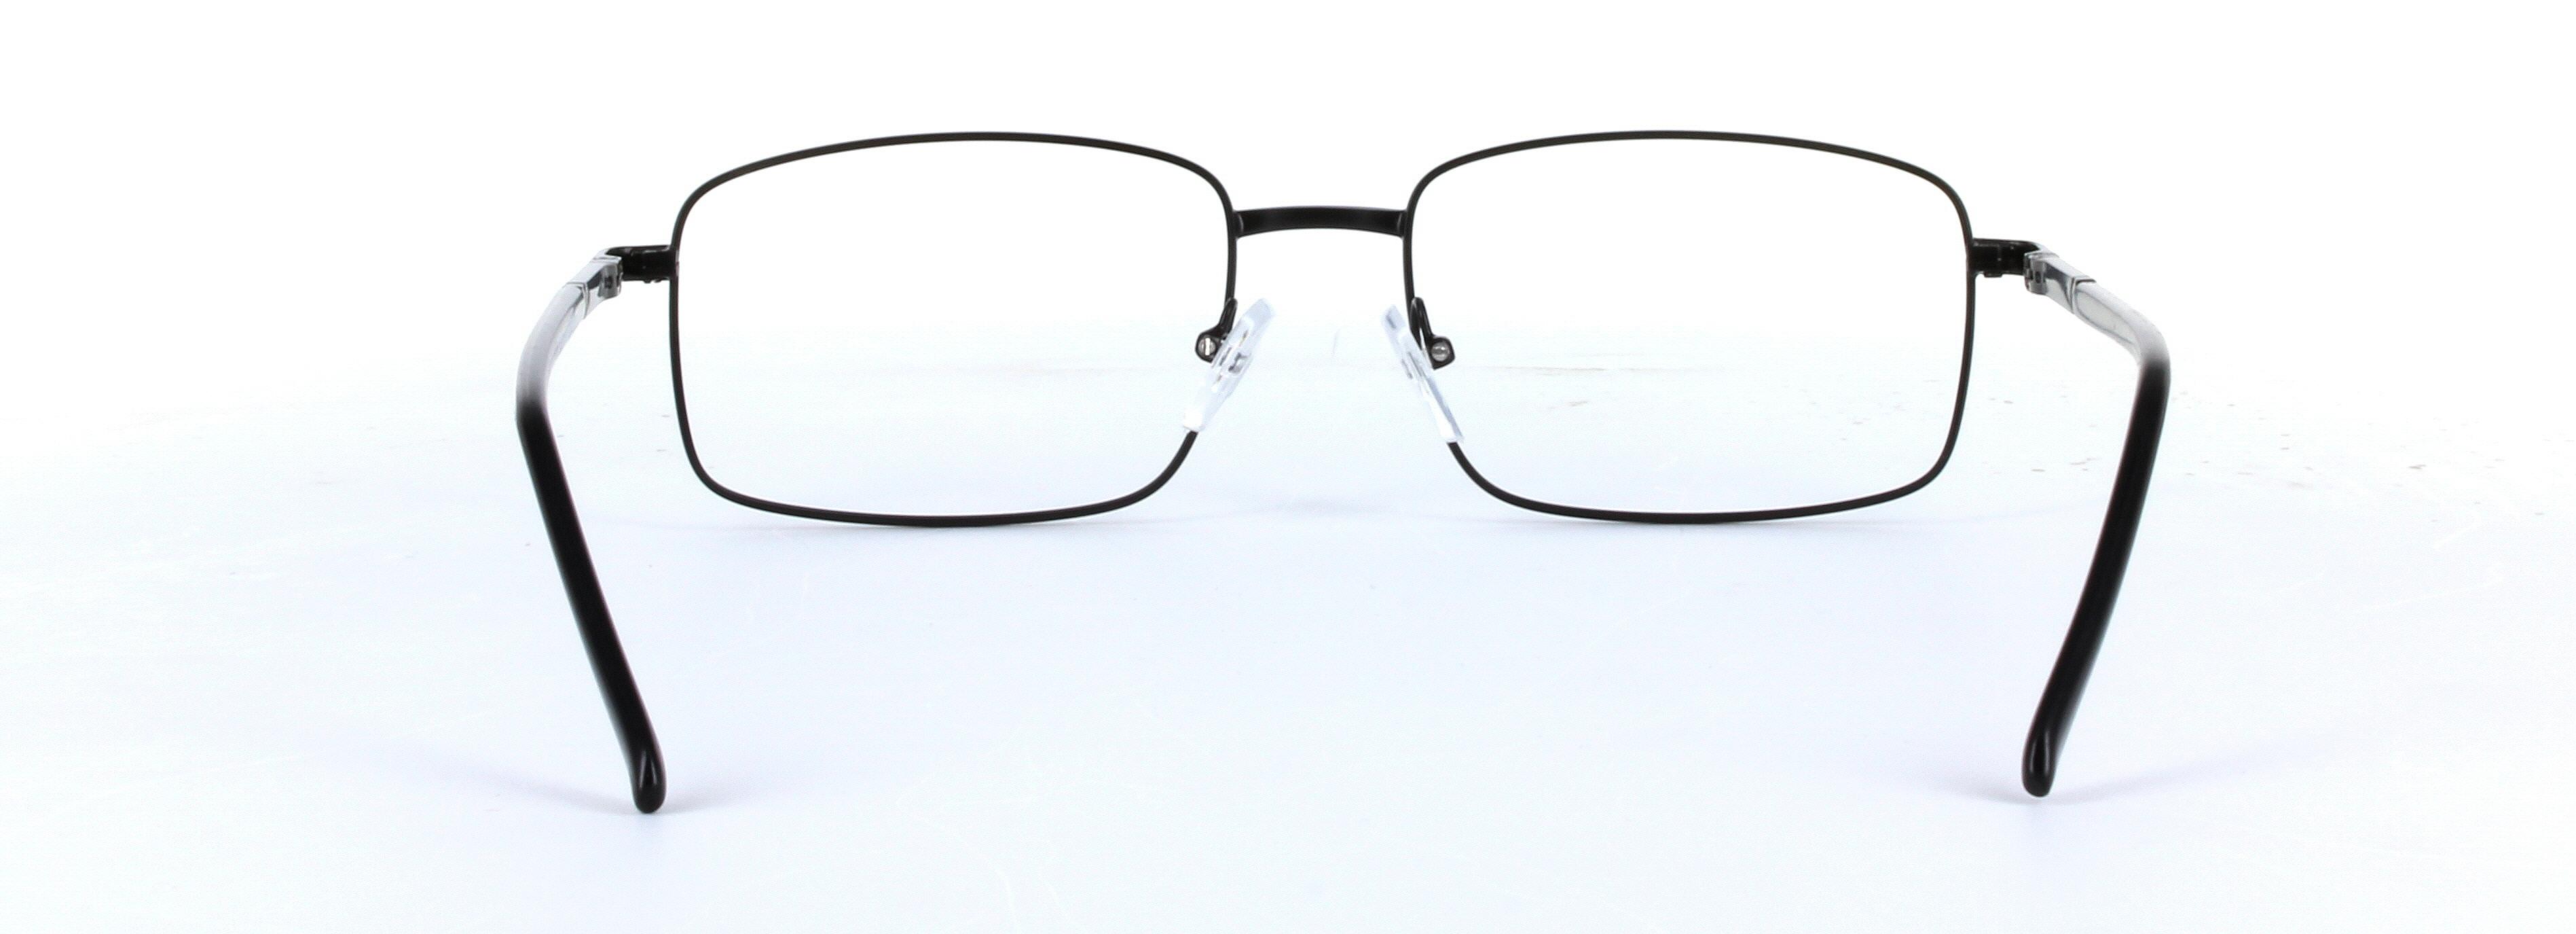 Jasper Black Full Rim Rectangular Metal Glasses - Image View 3